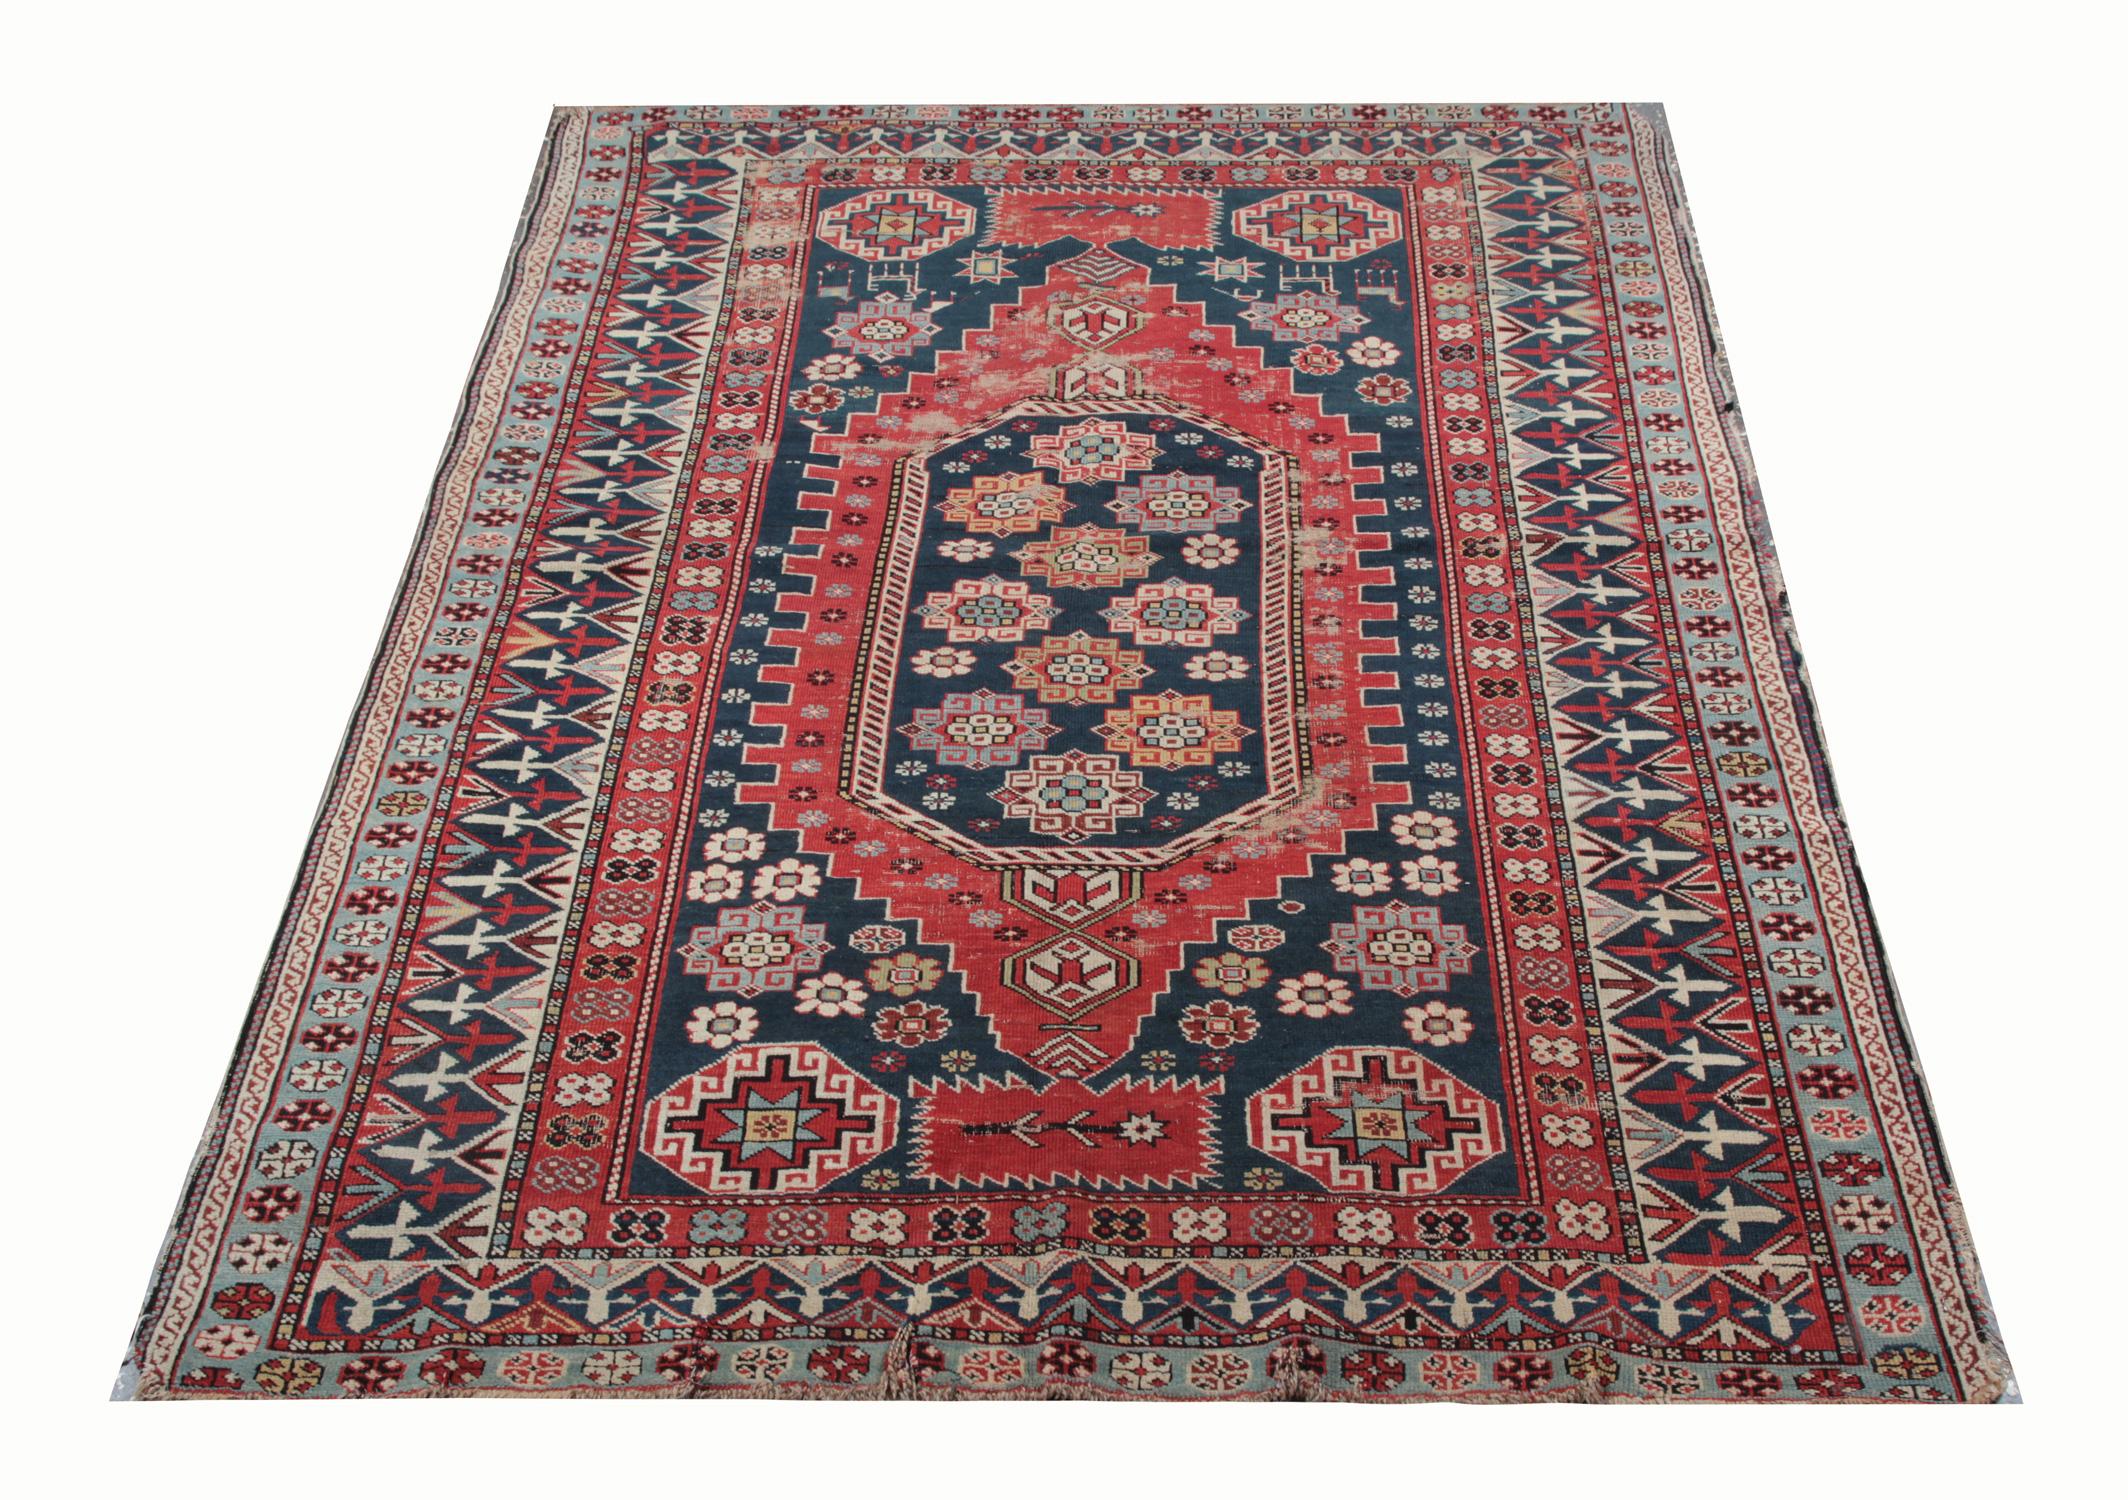 Un excellent exemple de tissage de tapis caucasien de la région de Shirvan. Bien que ces tapis à motifs de médaillons centraux au sol orange-rouge puissent sembler de loin, ce tapis tissé présente une grande variété de couleurs. Ce tapis géométrique